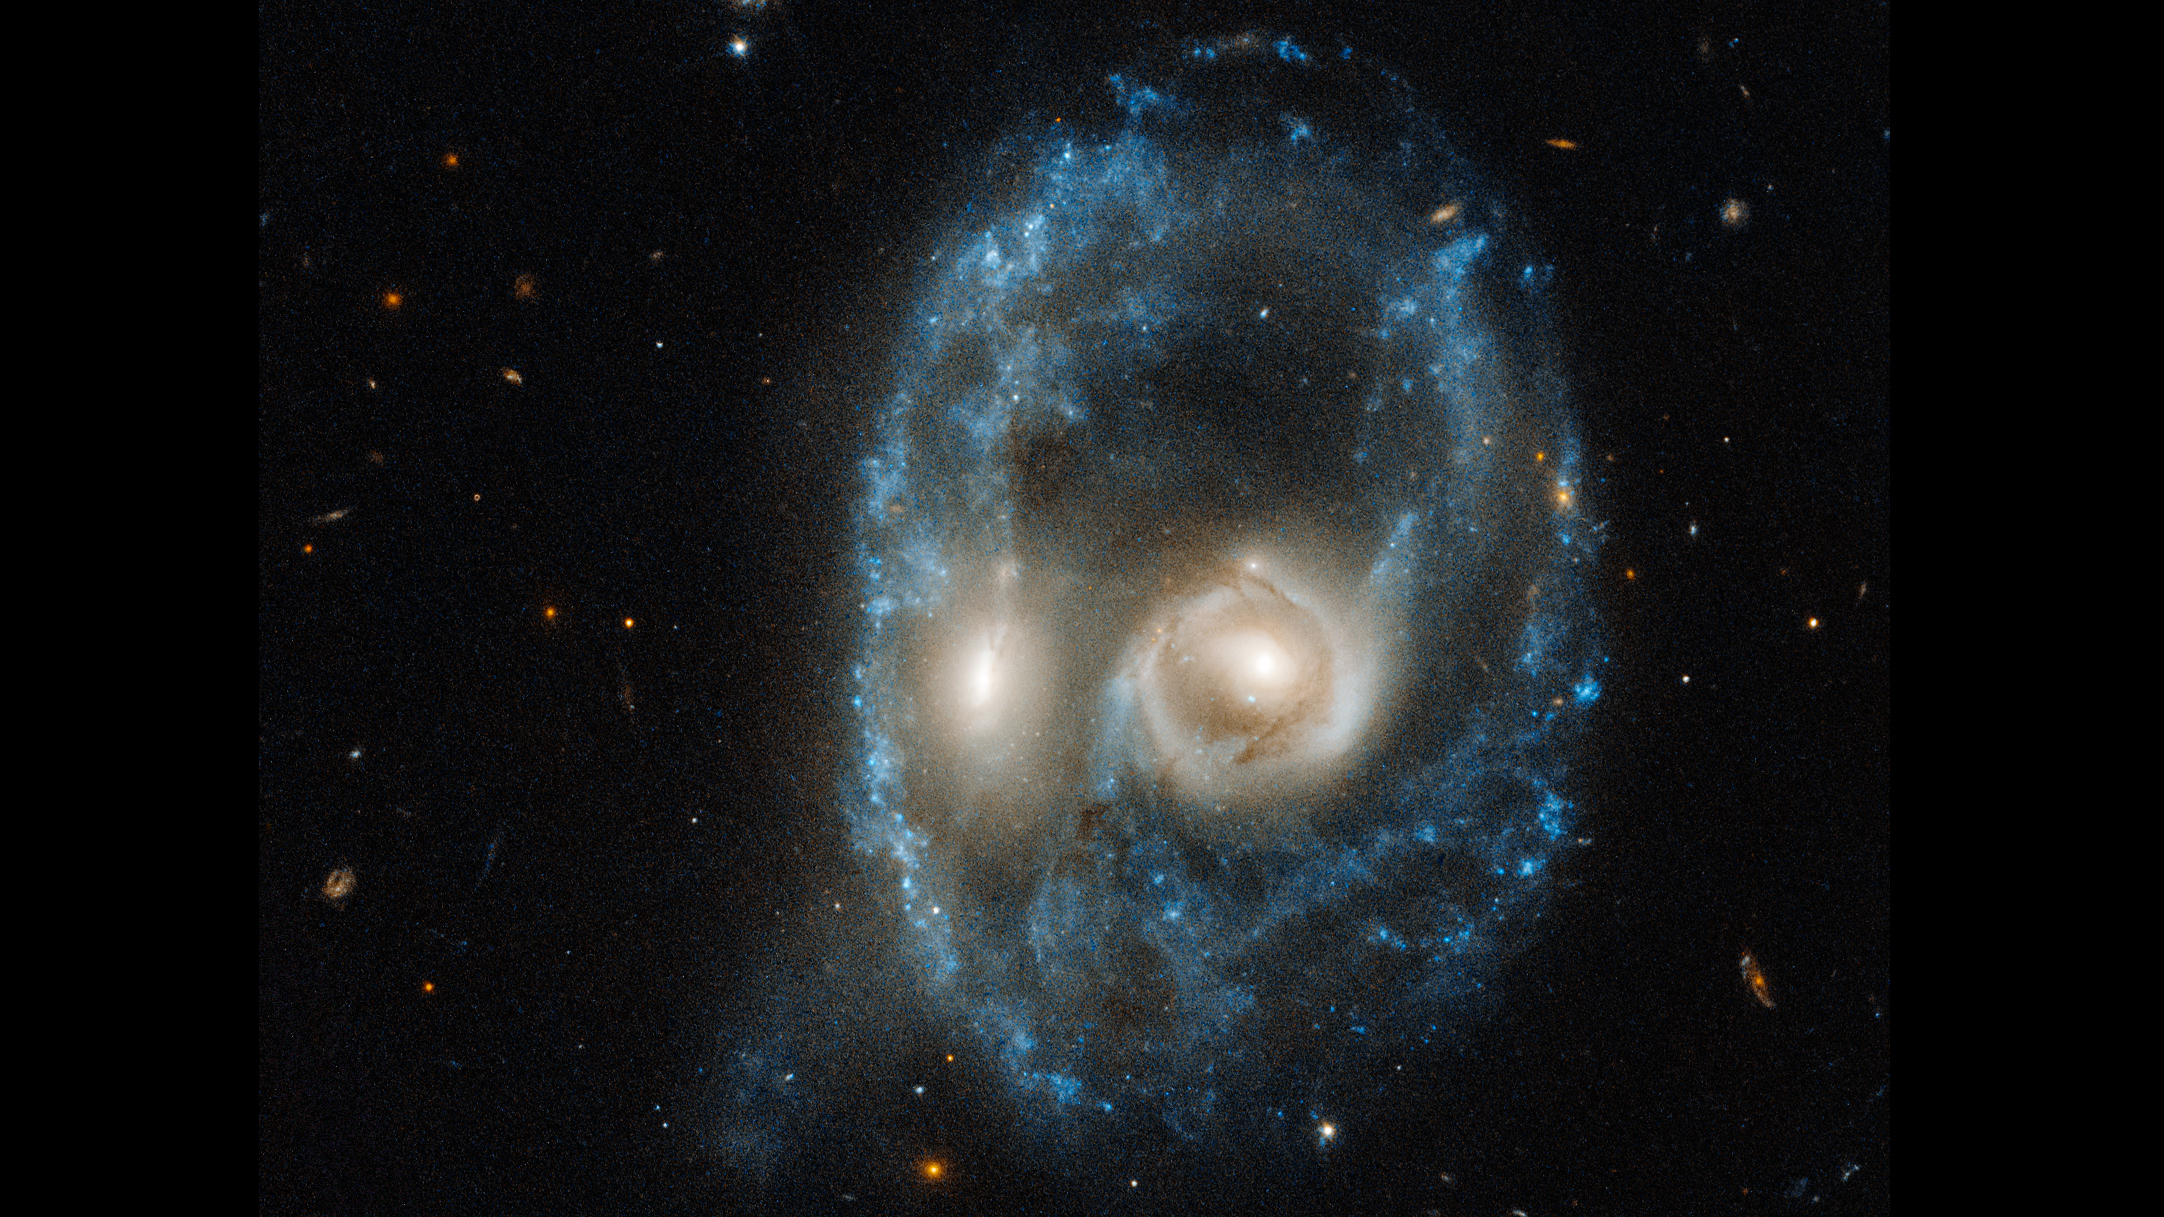 ¡Fantasma espacial!  El rostro fantasmal con ojos brillantes nos mira a todos en esta espeluznante foto del Hubble